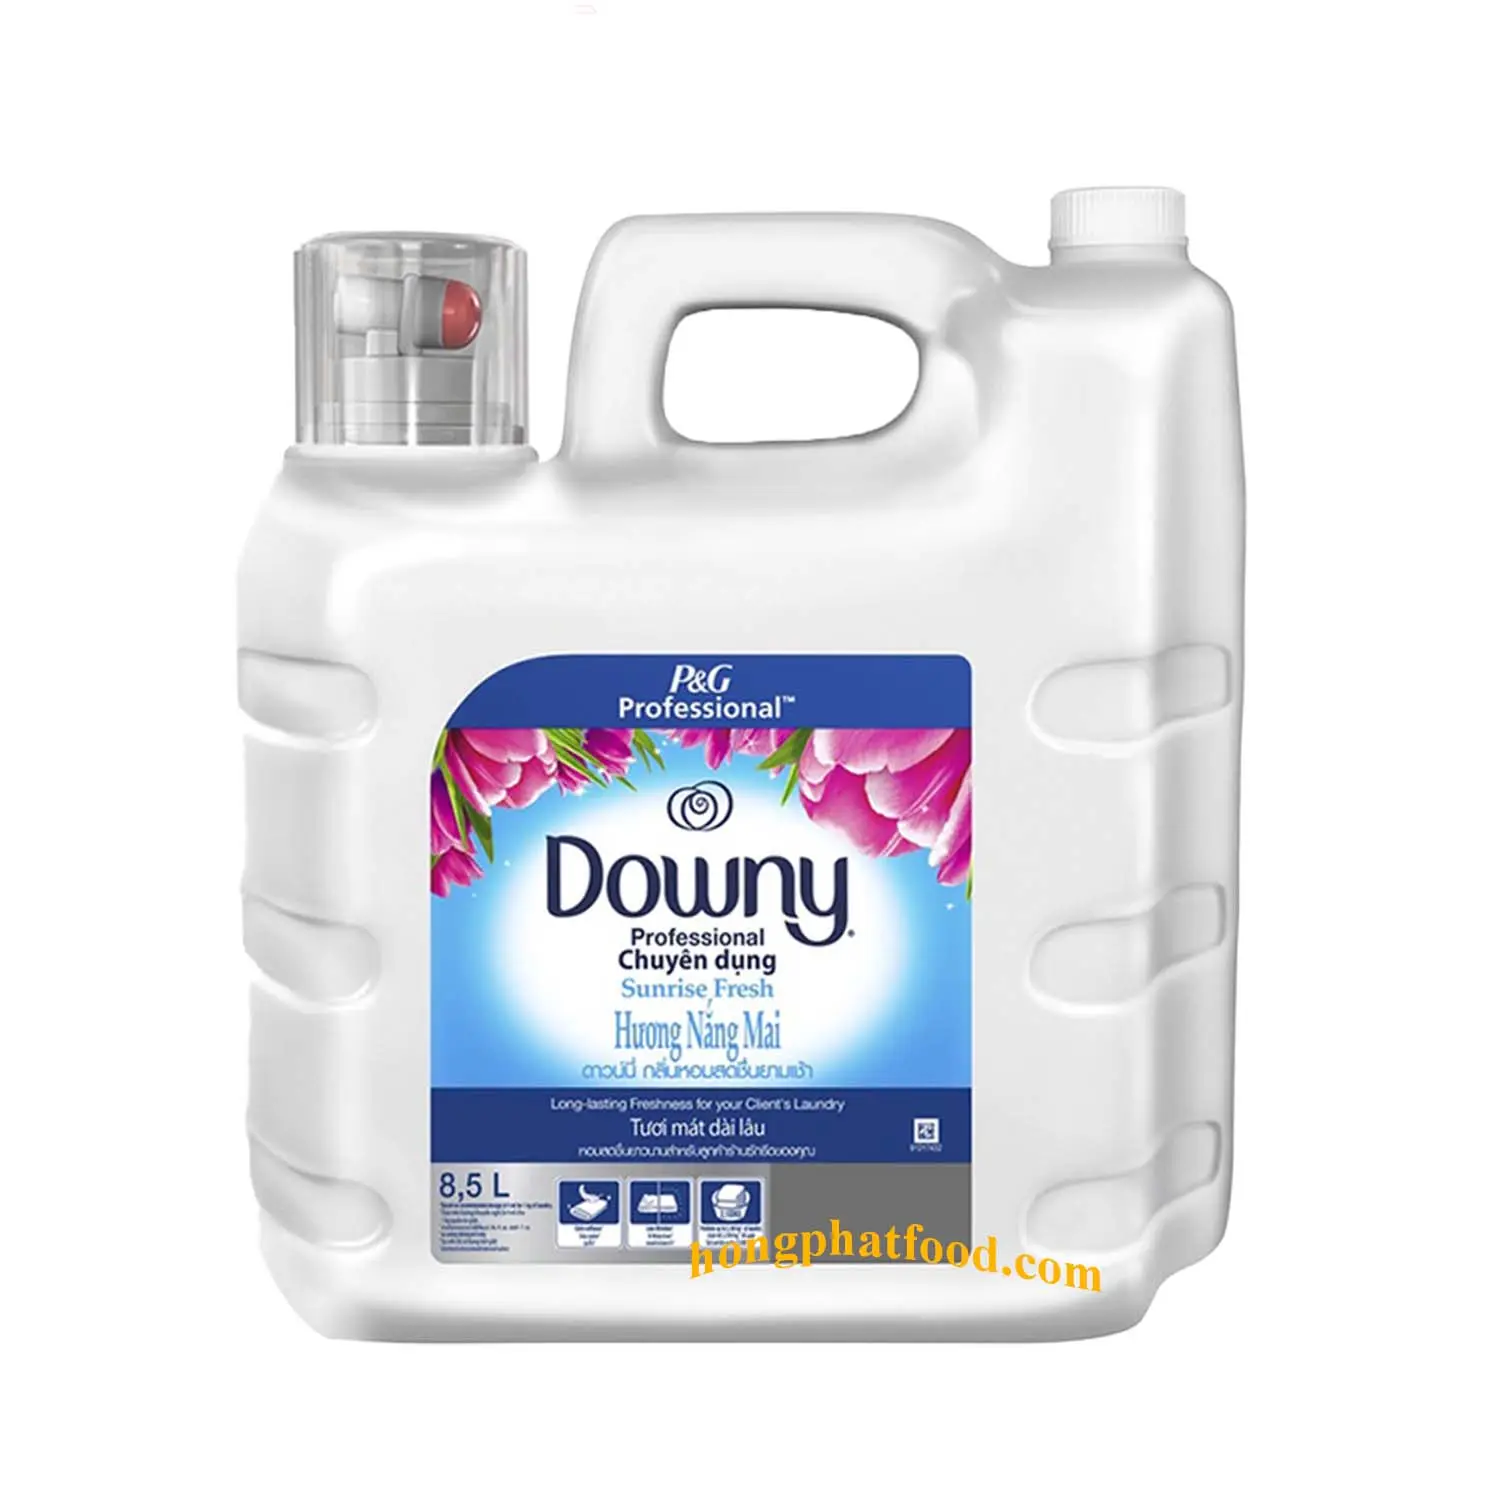 Hochwertiger Dow-ny Weichspüler Weichspüler spart große Flasche 8,5 l (Sunrise Fresh) -Duft verstärker flüssigkeit nach dem Waschen